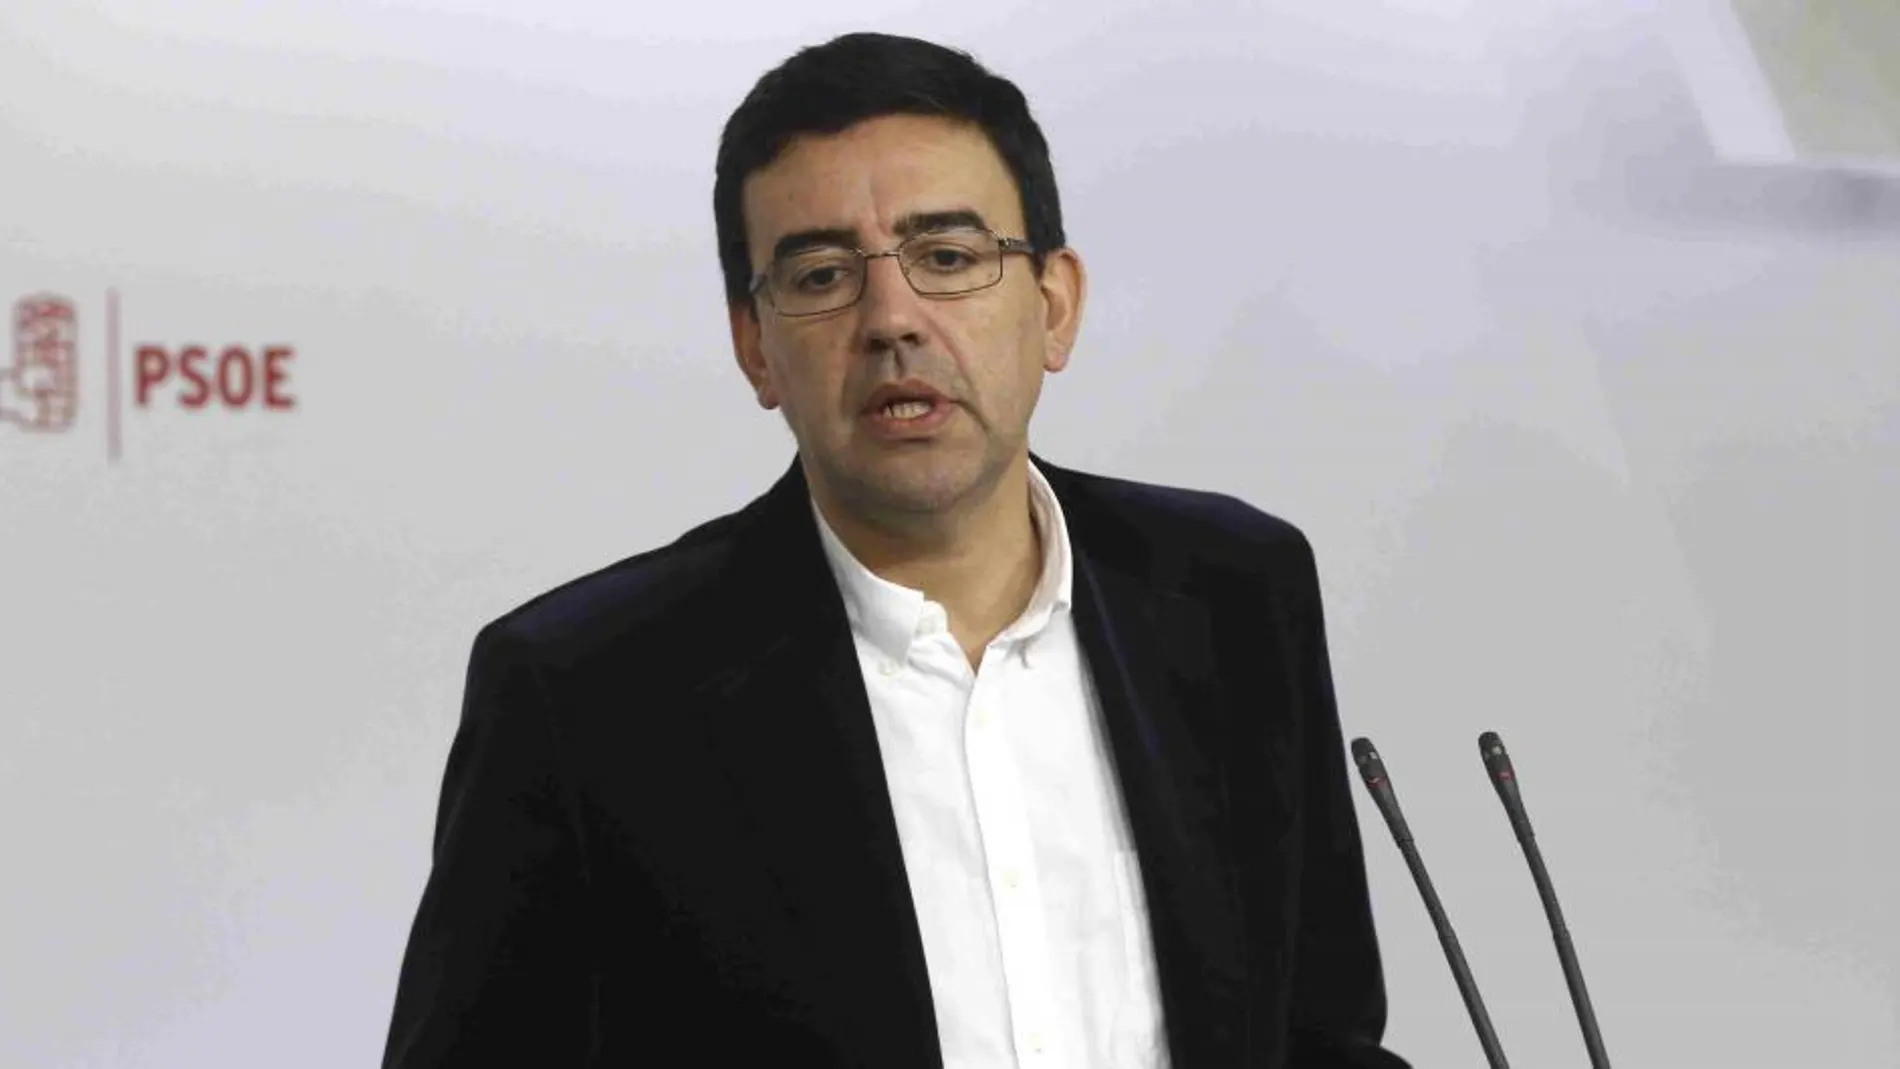 El portavoz de la Gestora del PSOE, Mario Jiménez.